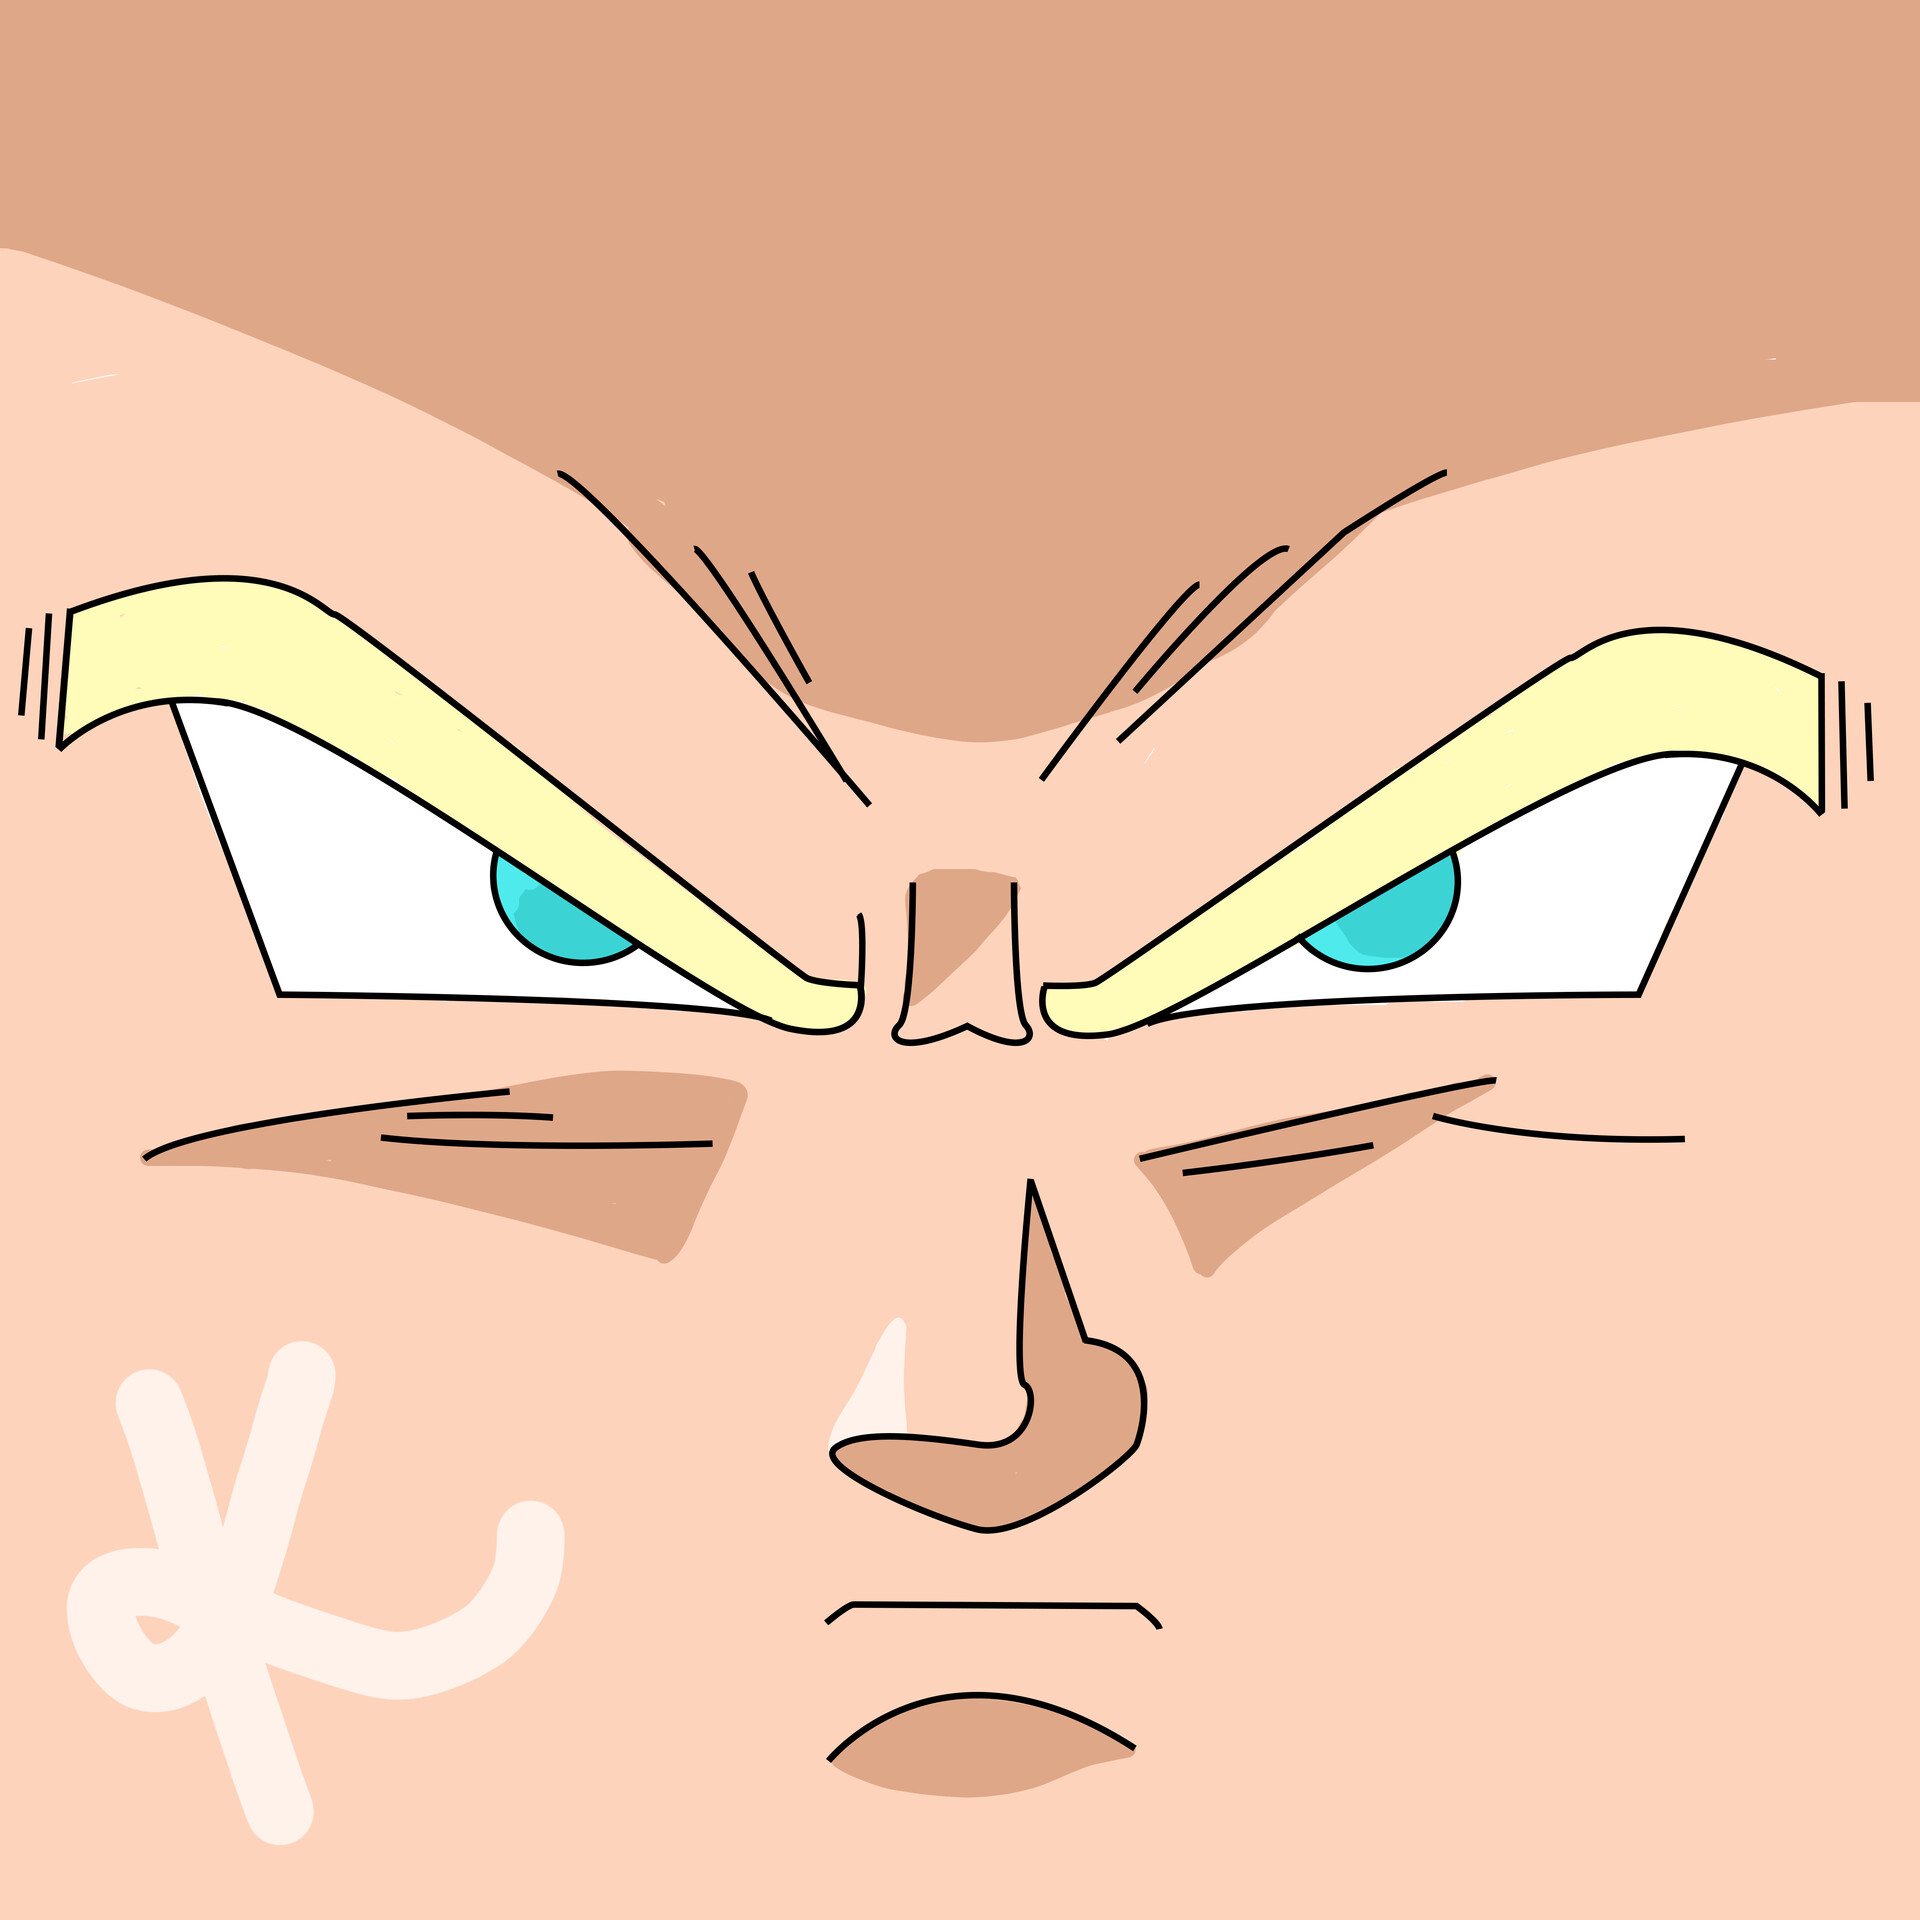 ArtStation - Goku Super Saiyan Roblox Face